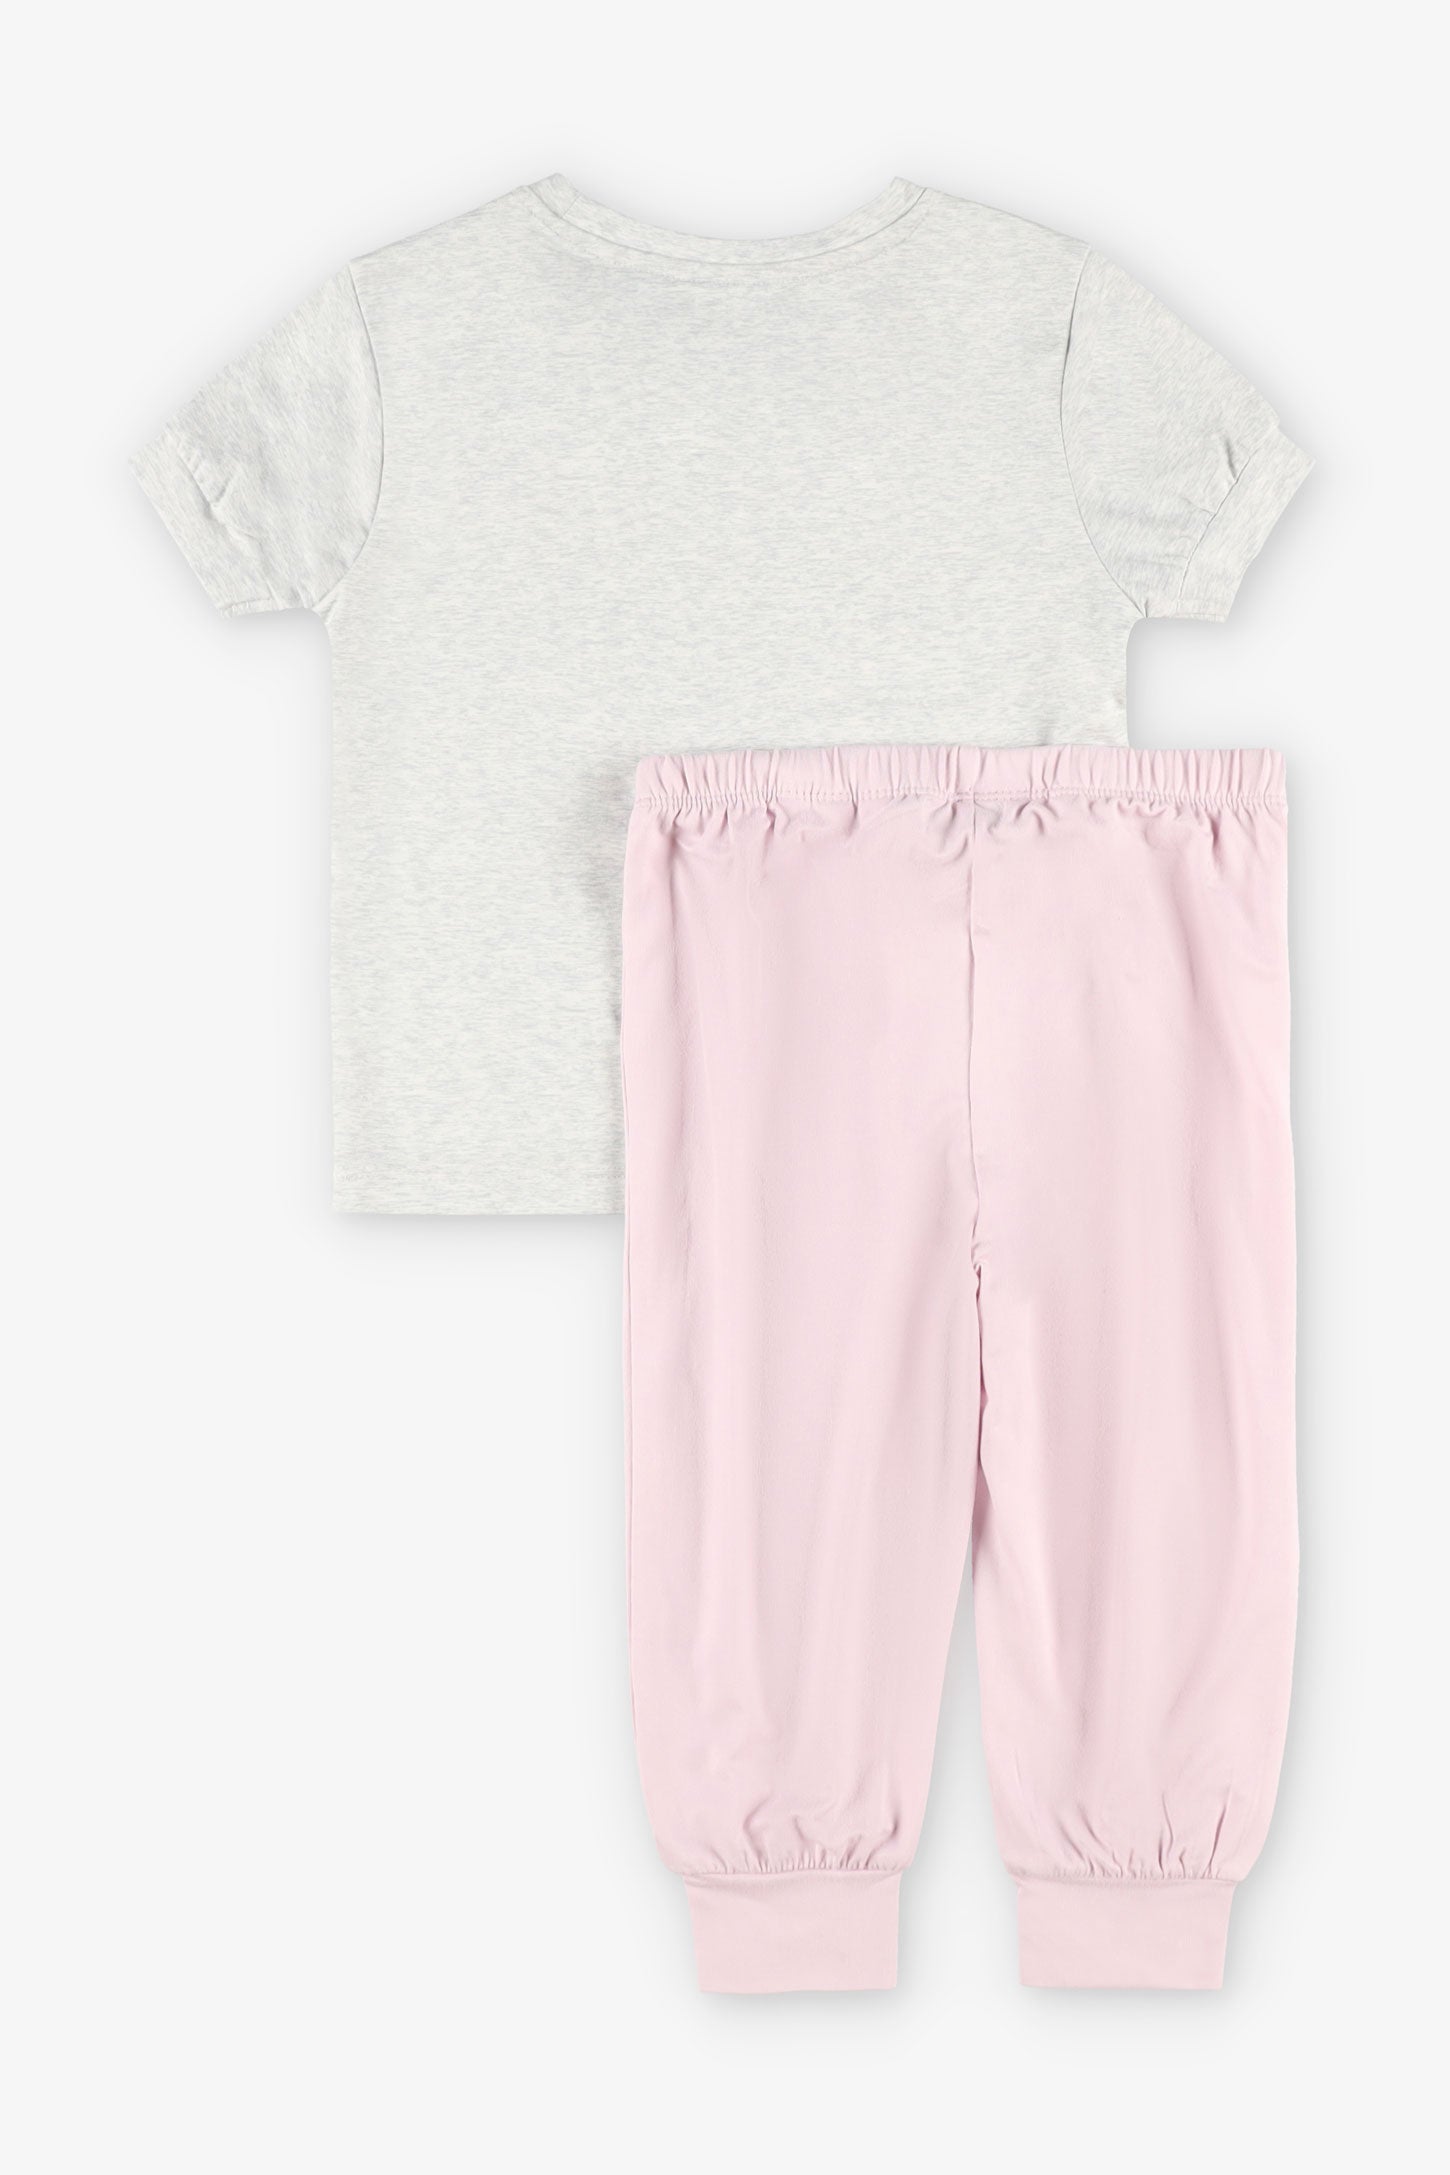 Pyjama 2-pièces Moss assorti famille, 2/35$ - Enfant fille && GRIS MIXTE